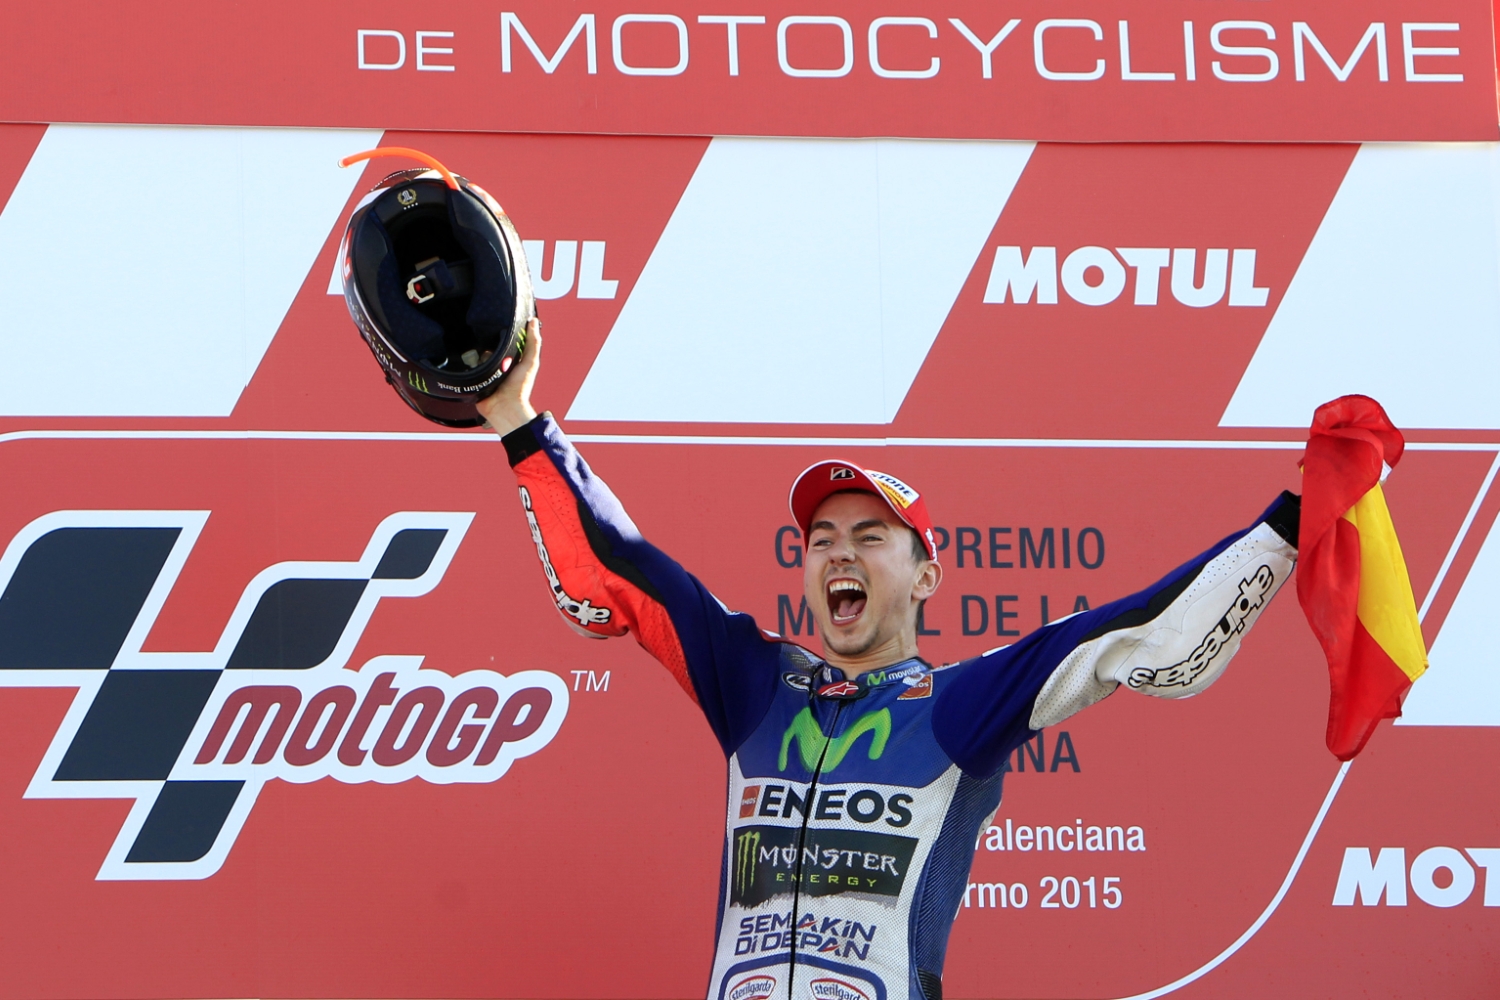 Jorge Lorenzo completó la hazaña y se alzó con el título de campeón del mundo de MotoGP